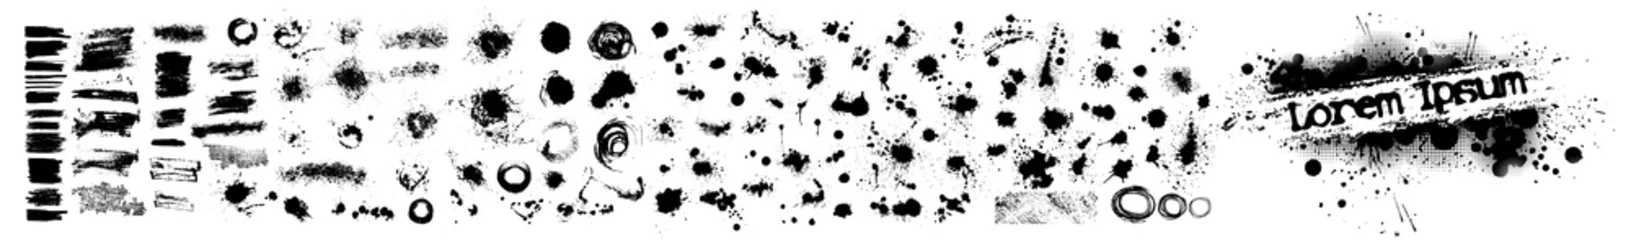 Gordijnen Een reeks zwarte vlekken van verf. vector illustratie © Мария Неноглядова